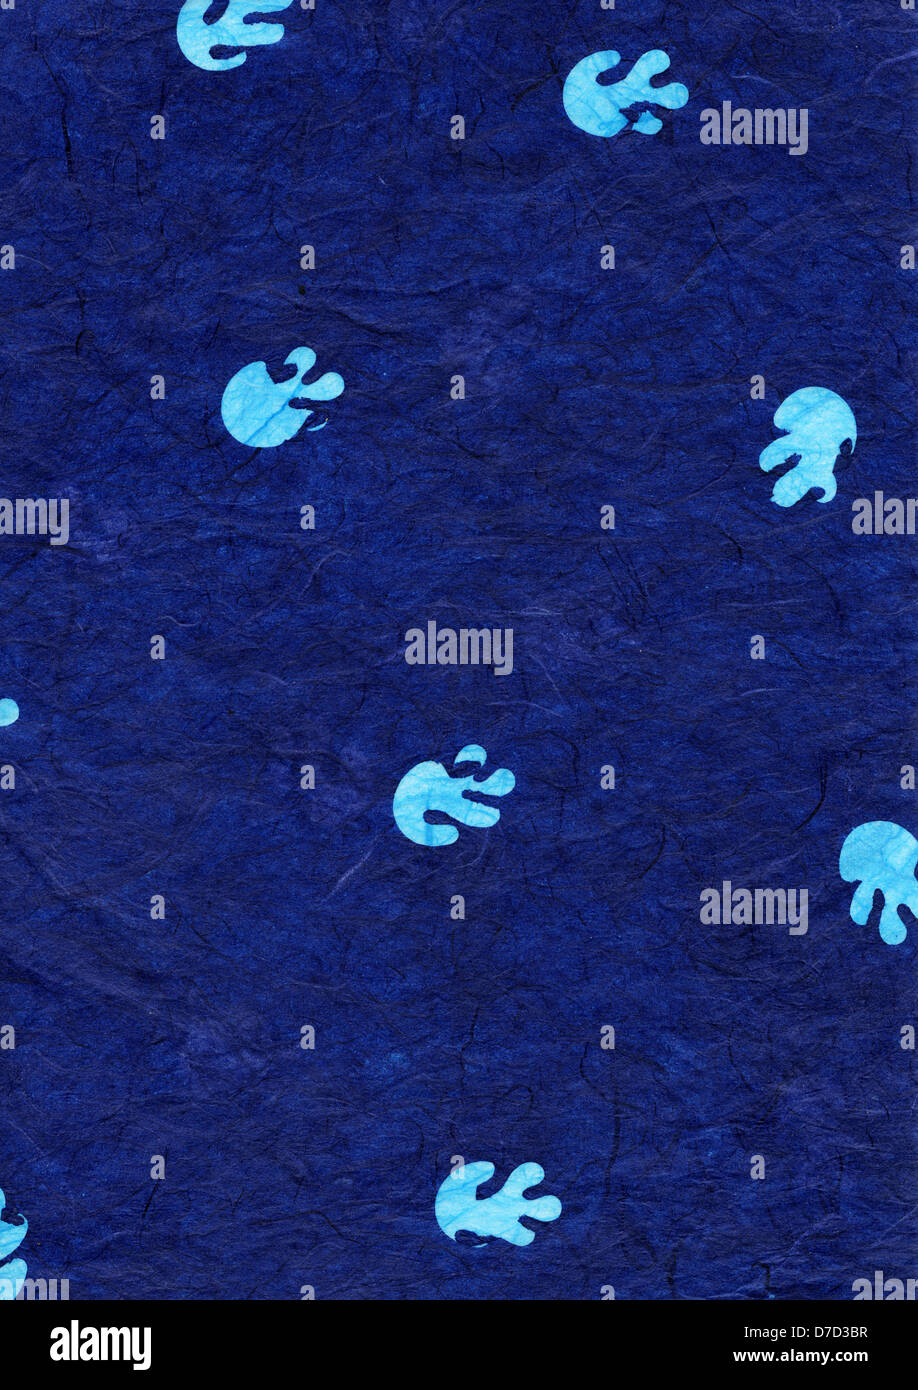 Scansione ad alta risoluzione di riso blu modello di carta blu brillante forme anamorfici somigliante a Medusa decorare la sua superficie. Scansione Foto Stock